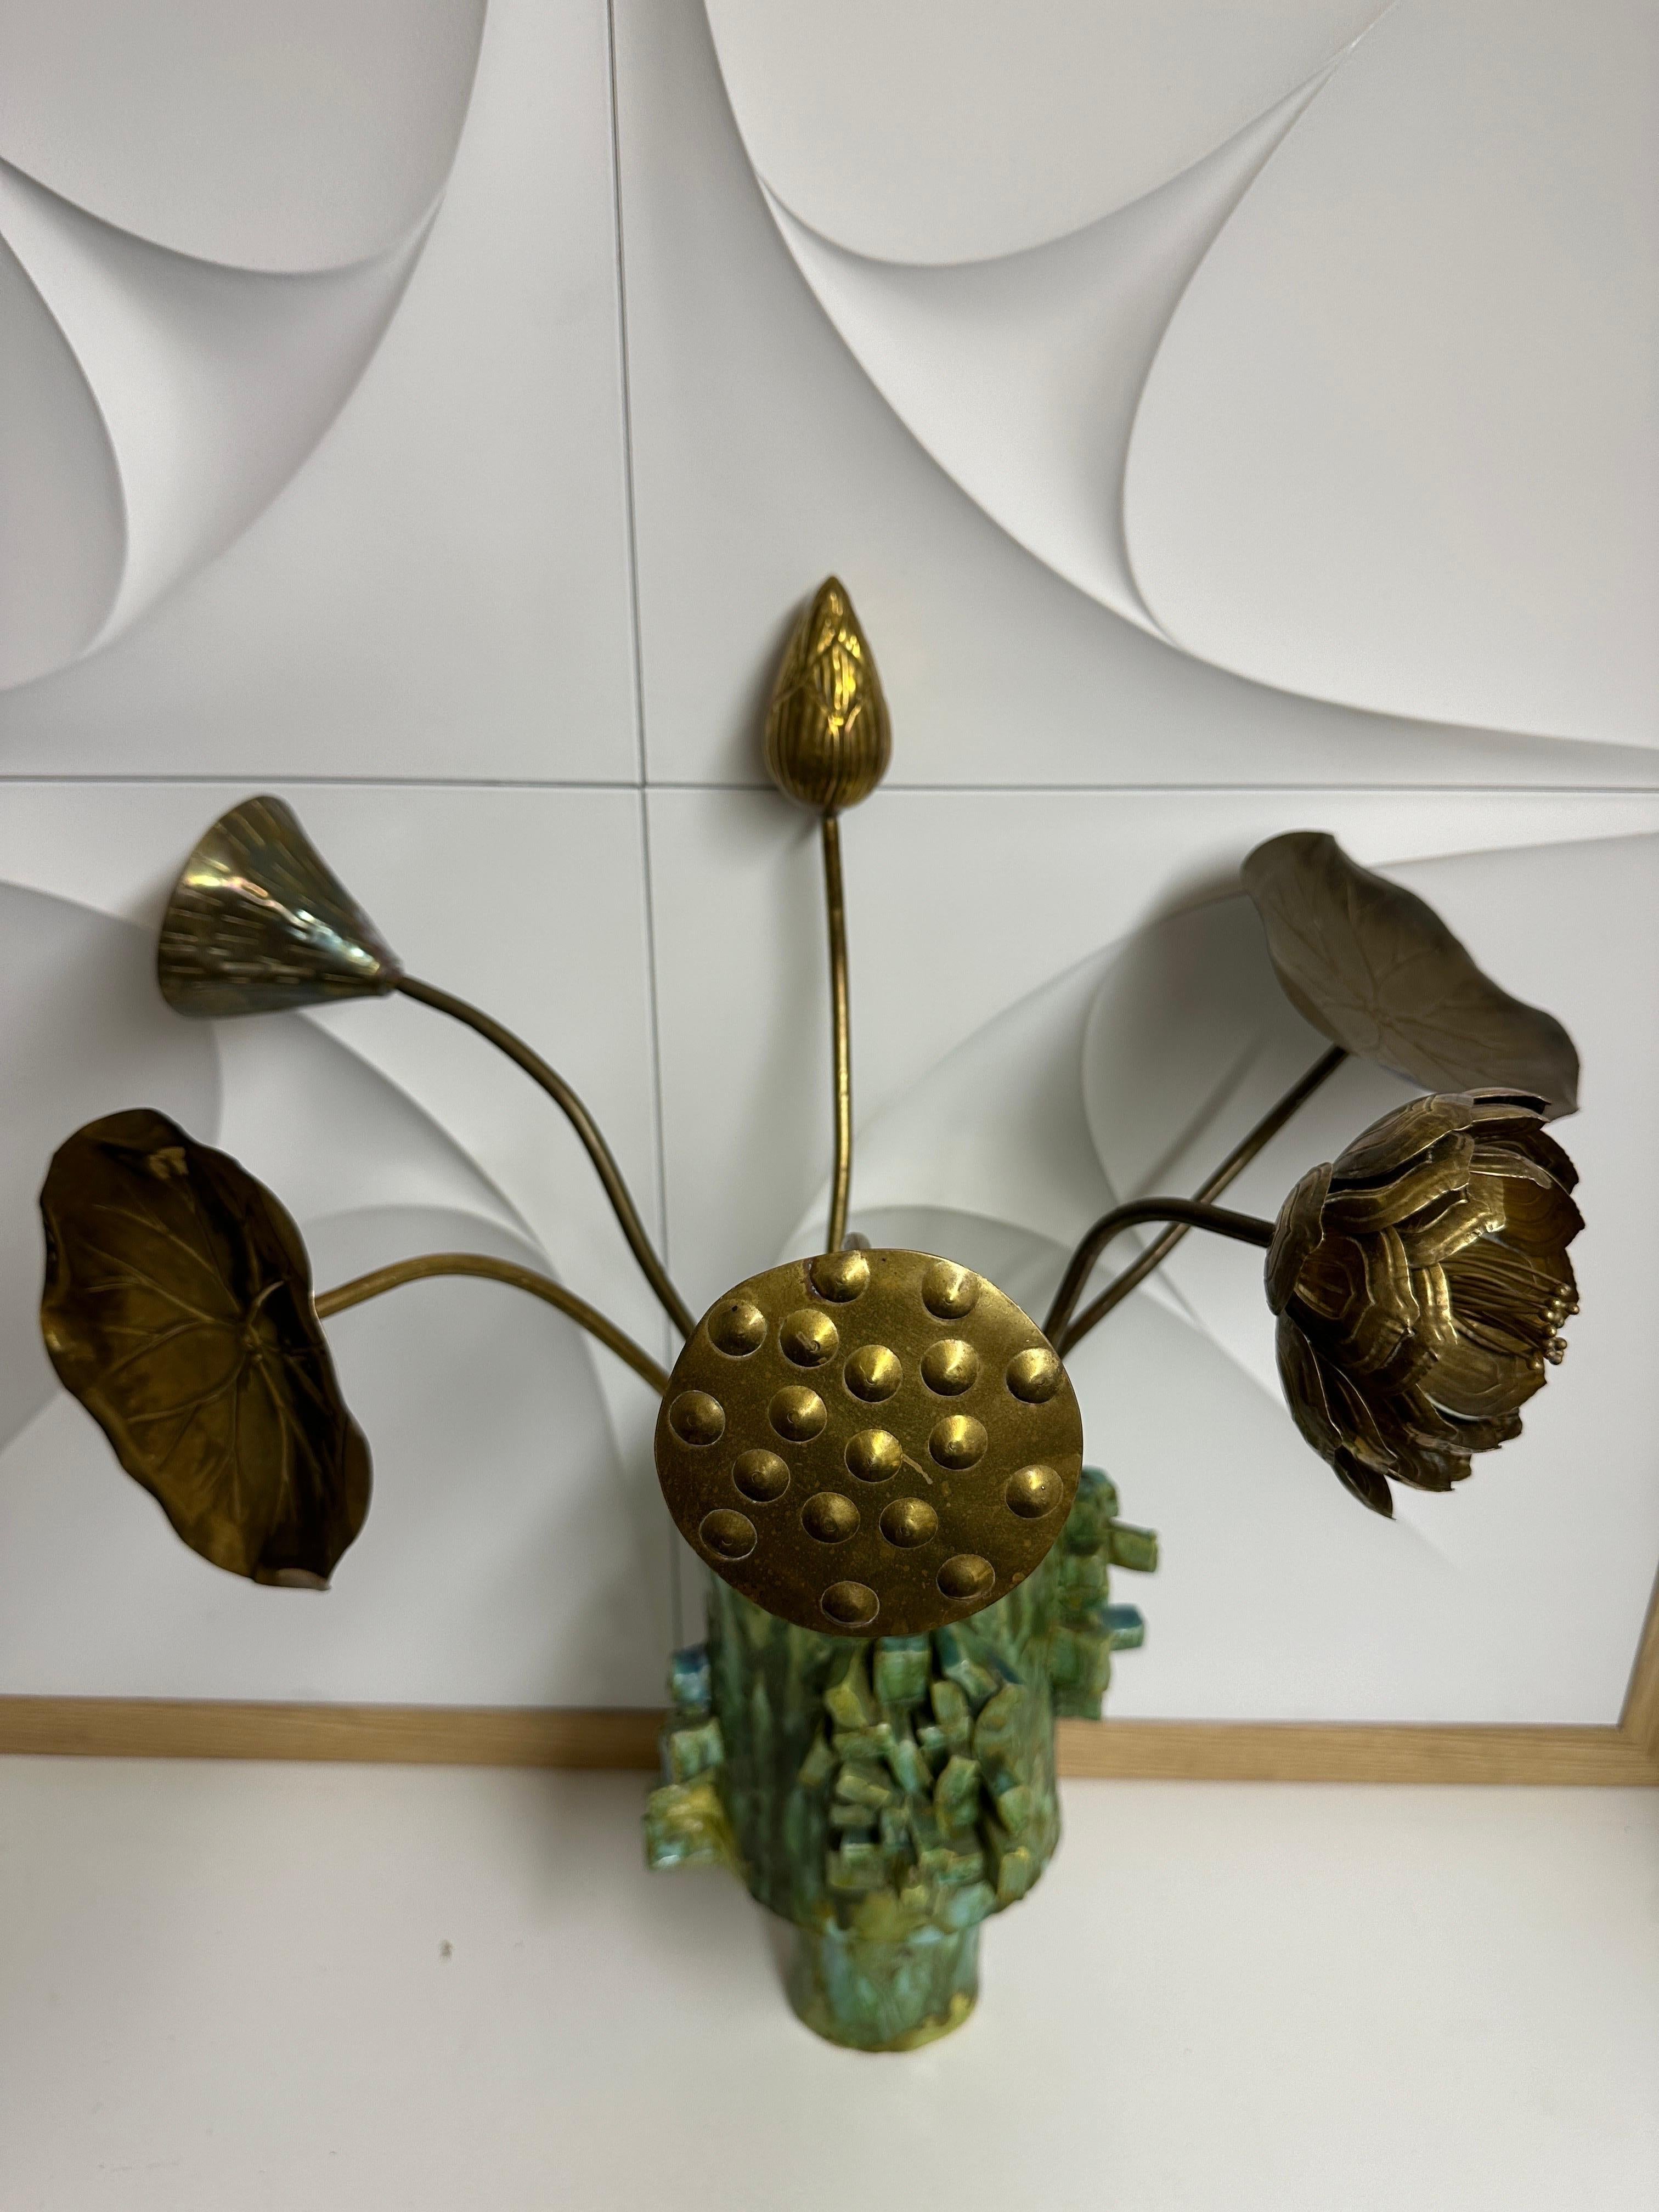 Ensemble de six fleurs de lotus en laiton attribué à Feldman.
Le pot en céramique n'est pas inclus.
Les fleurs mesurent de 19 à 21 pouces de haut. Les feuilles de lotus ont un diamètre de 6